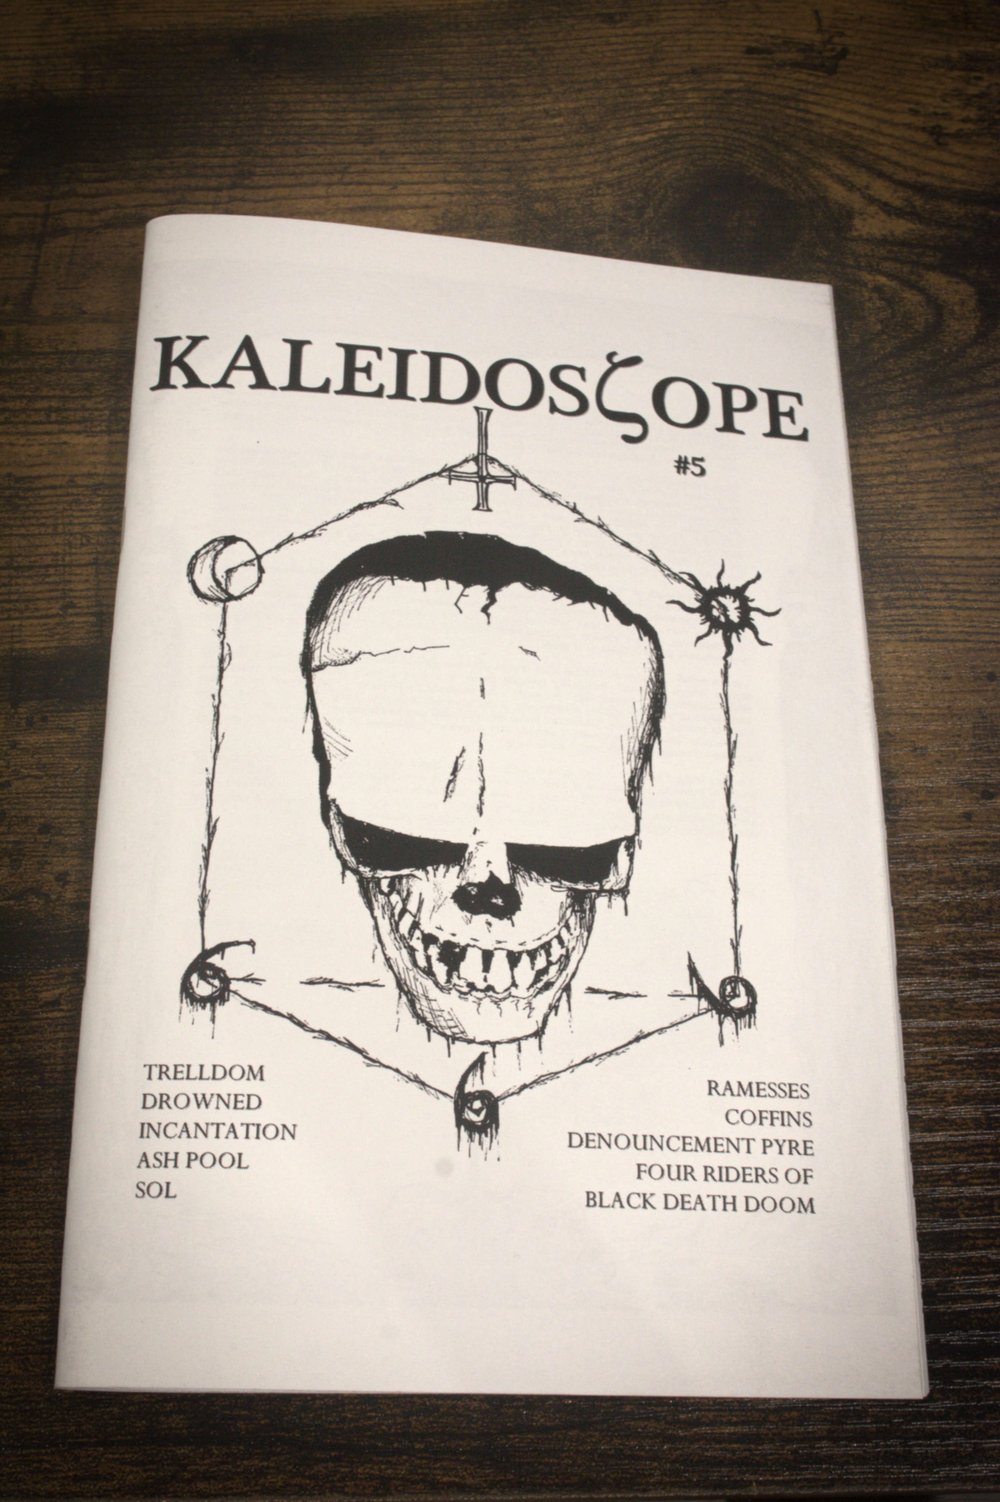 Kaleidoscope #5